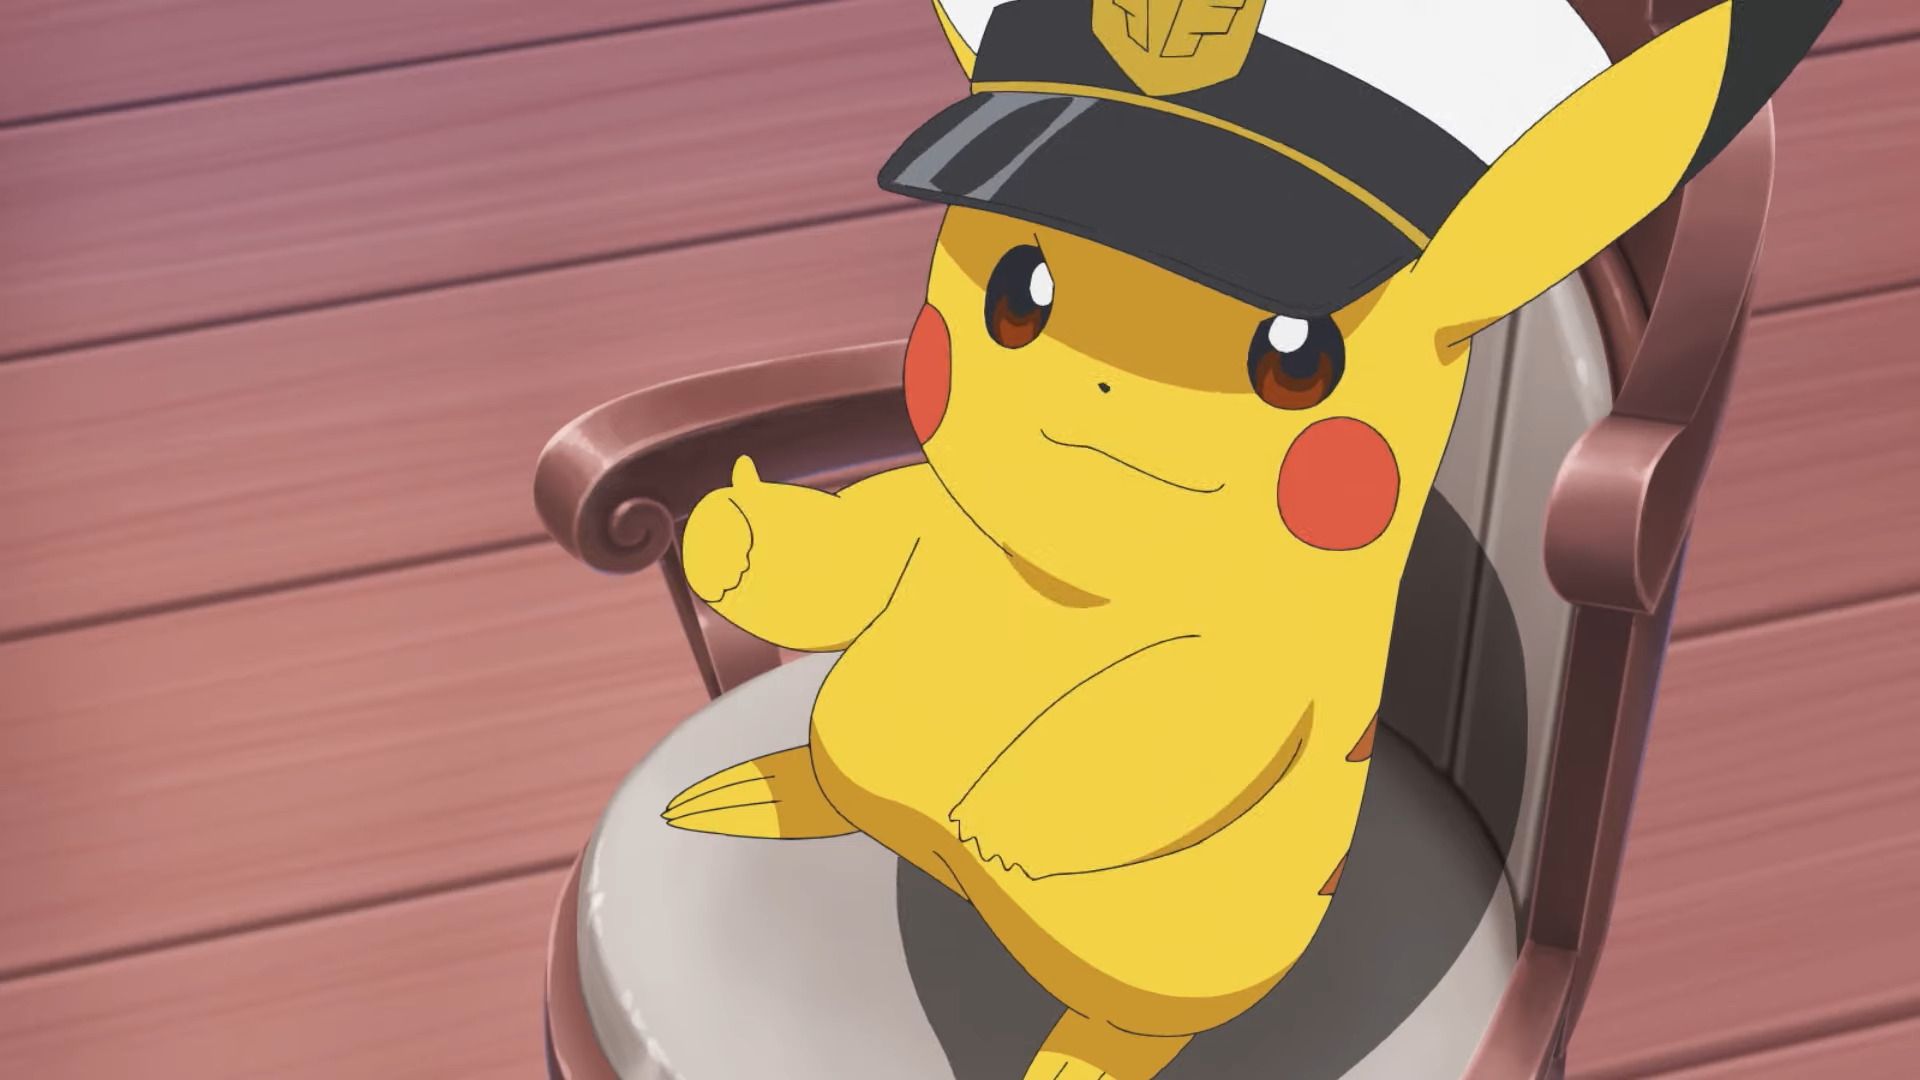 #Pokémon GO feiert Pokémon Day mit einem speziellen Pikachu und gleich drei Pokémon-Debüts